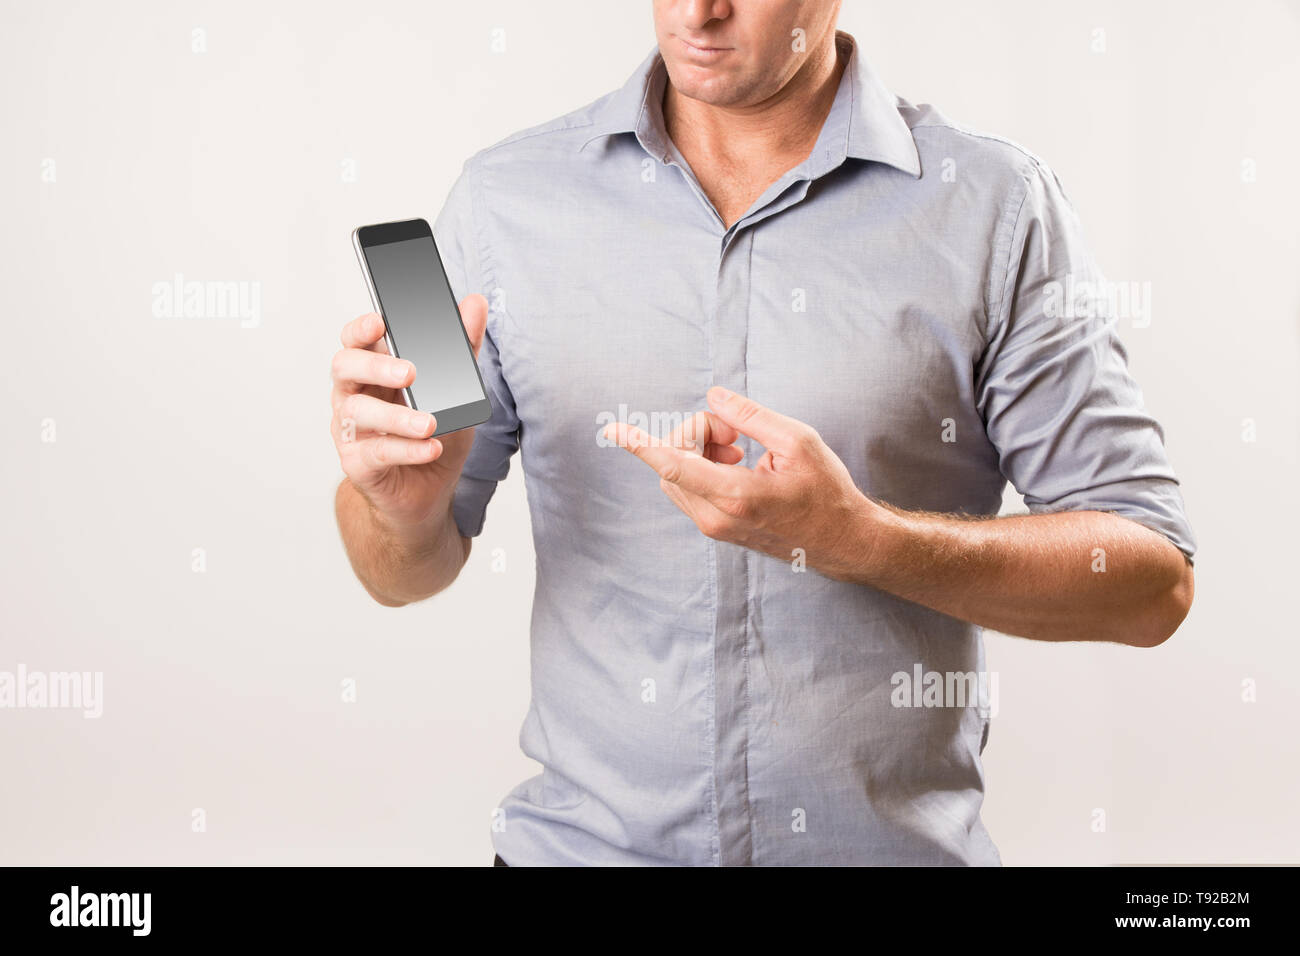 Man holding phone et pointant sur l'écran à l'autre part - la vie moderne / concept de droit des télécommunications. Banque D'Images